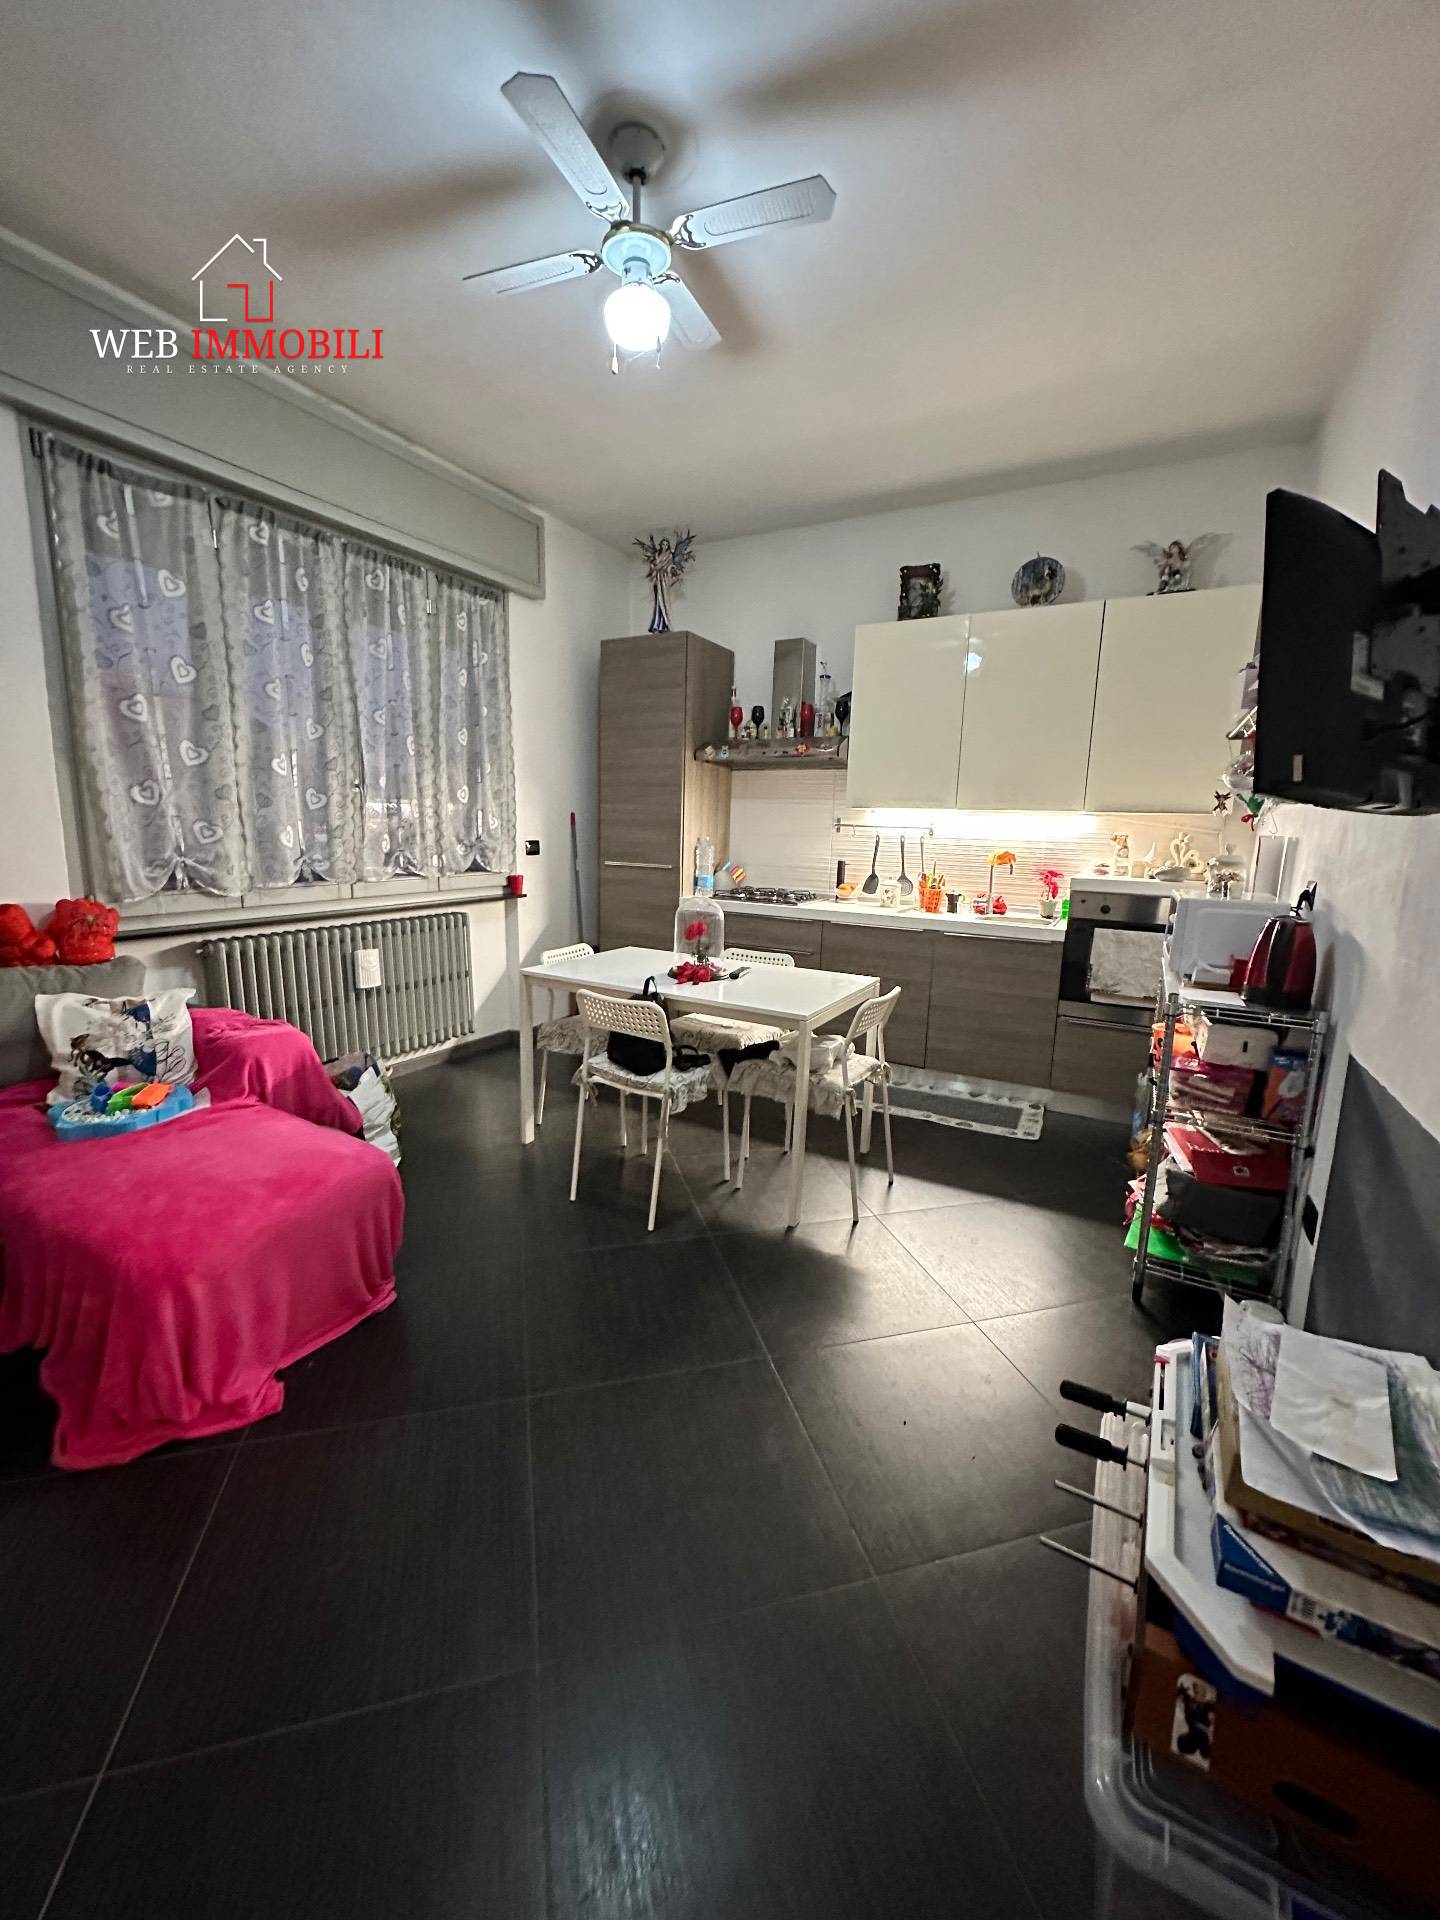 Appartamento in vendita a Mortara, 1 locali, prezzo € 55.000 | PortaleAgenzieImmobiliari.it